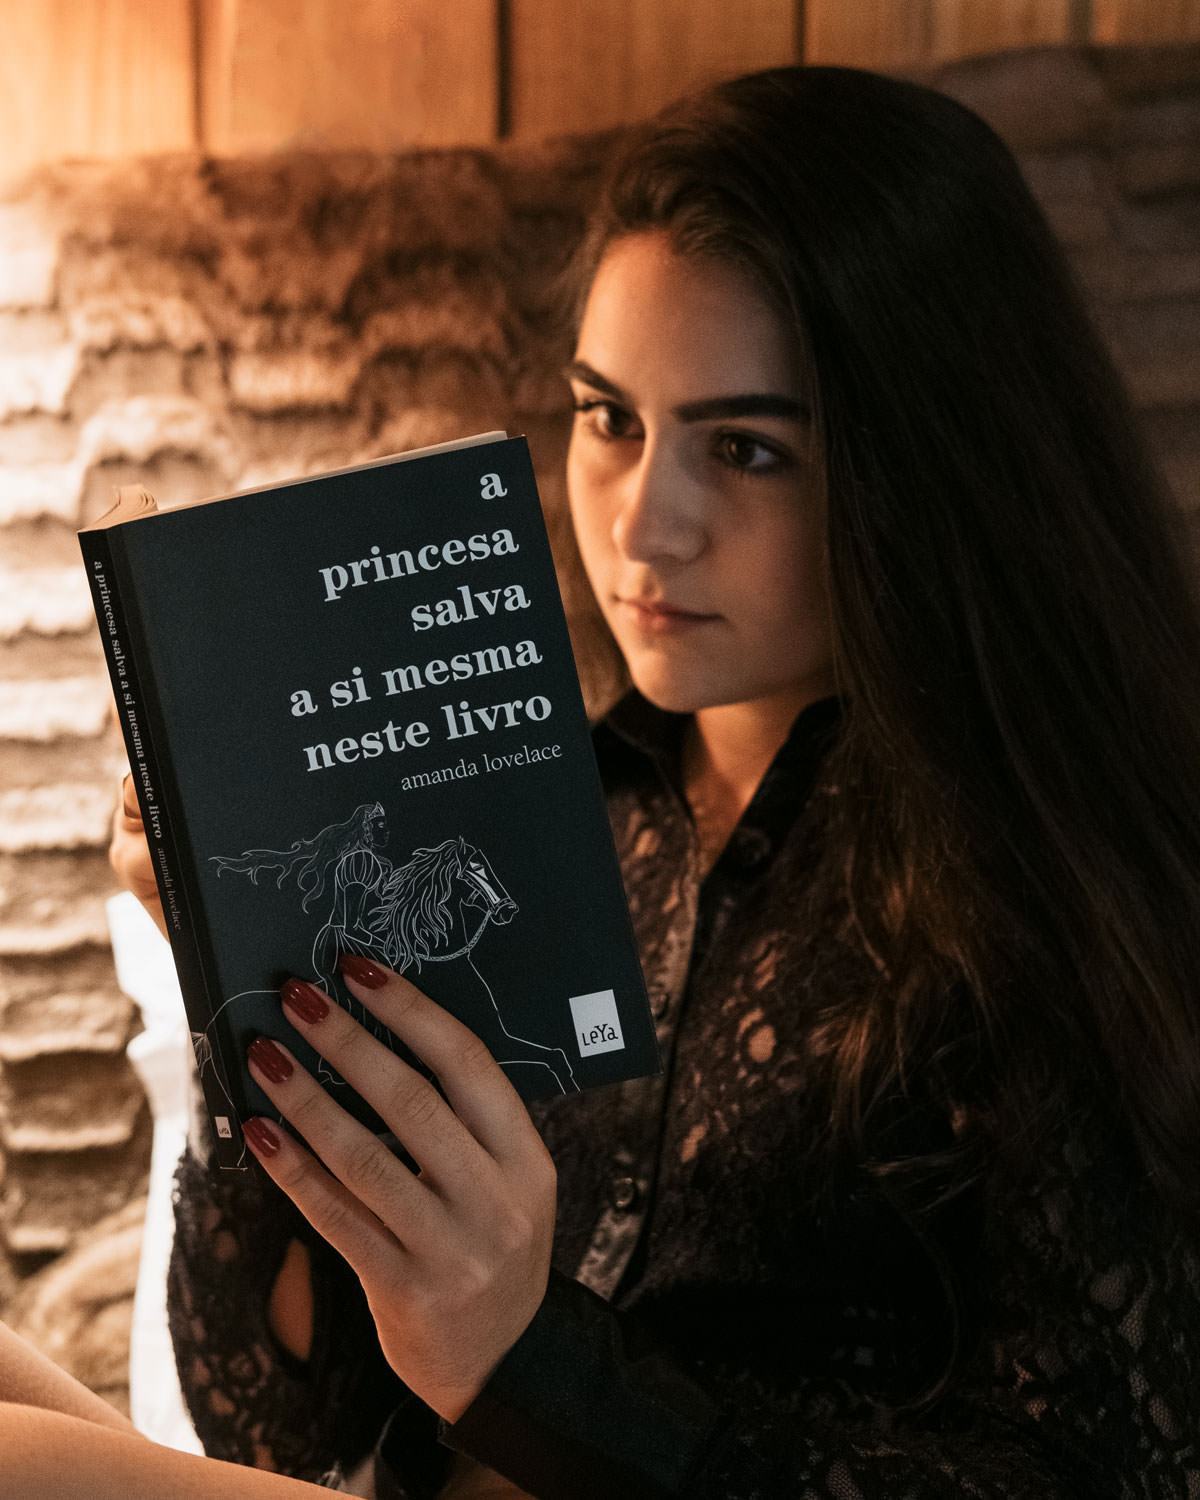 A Princesa Salva a Si Mesma Neste Livro, de Amanda Lovelace